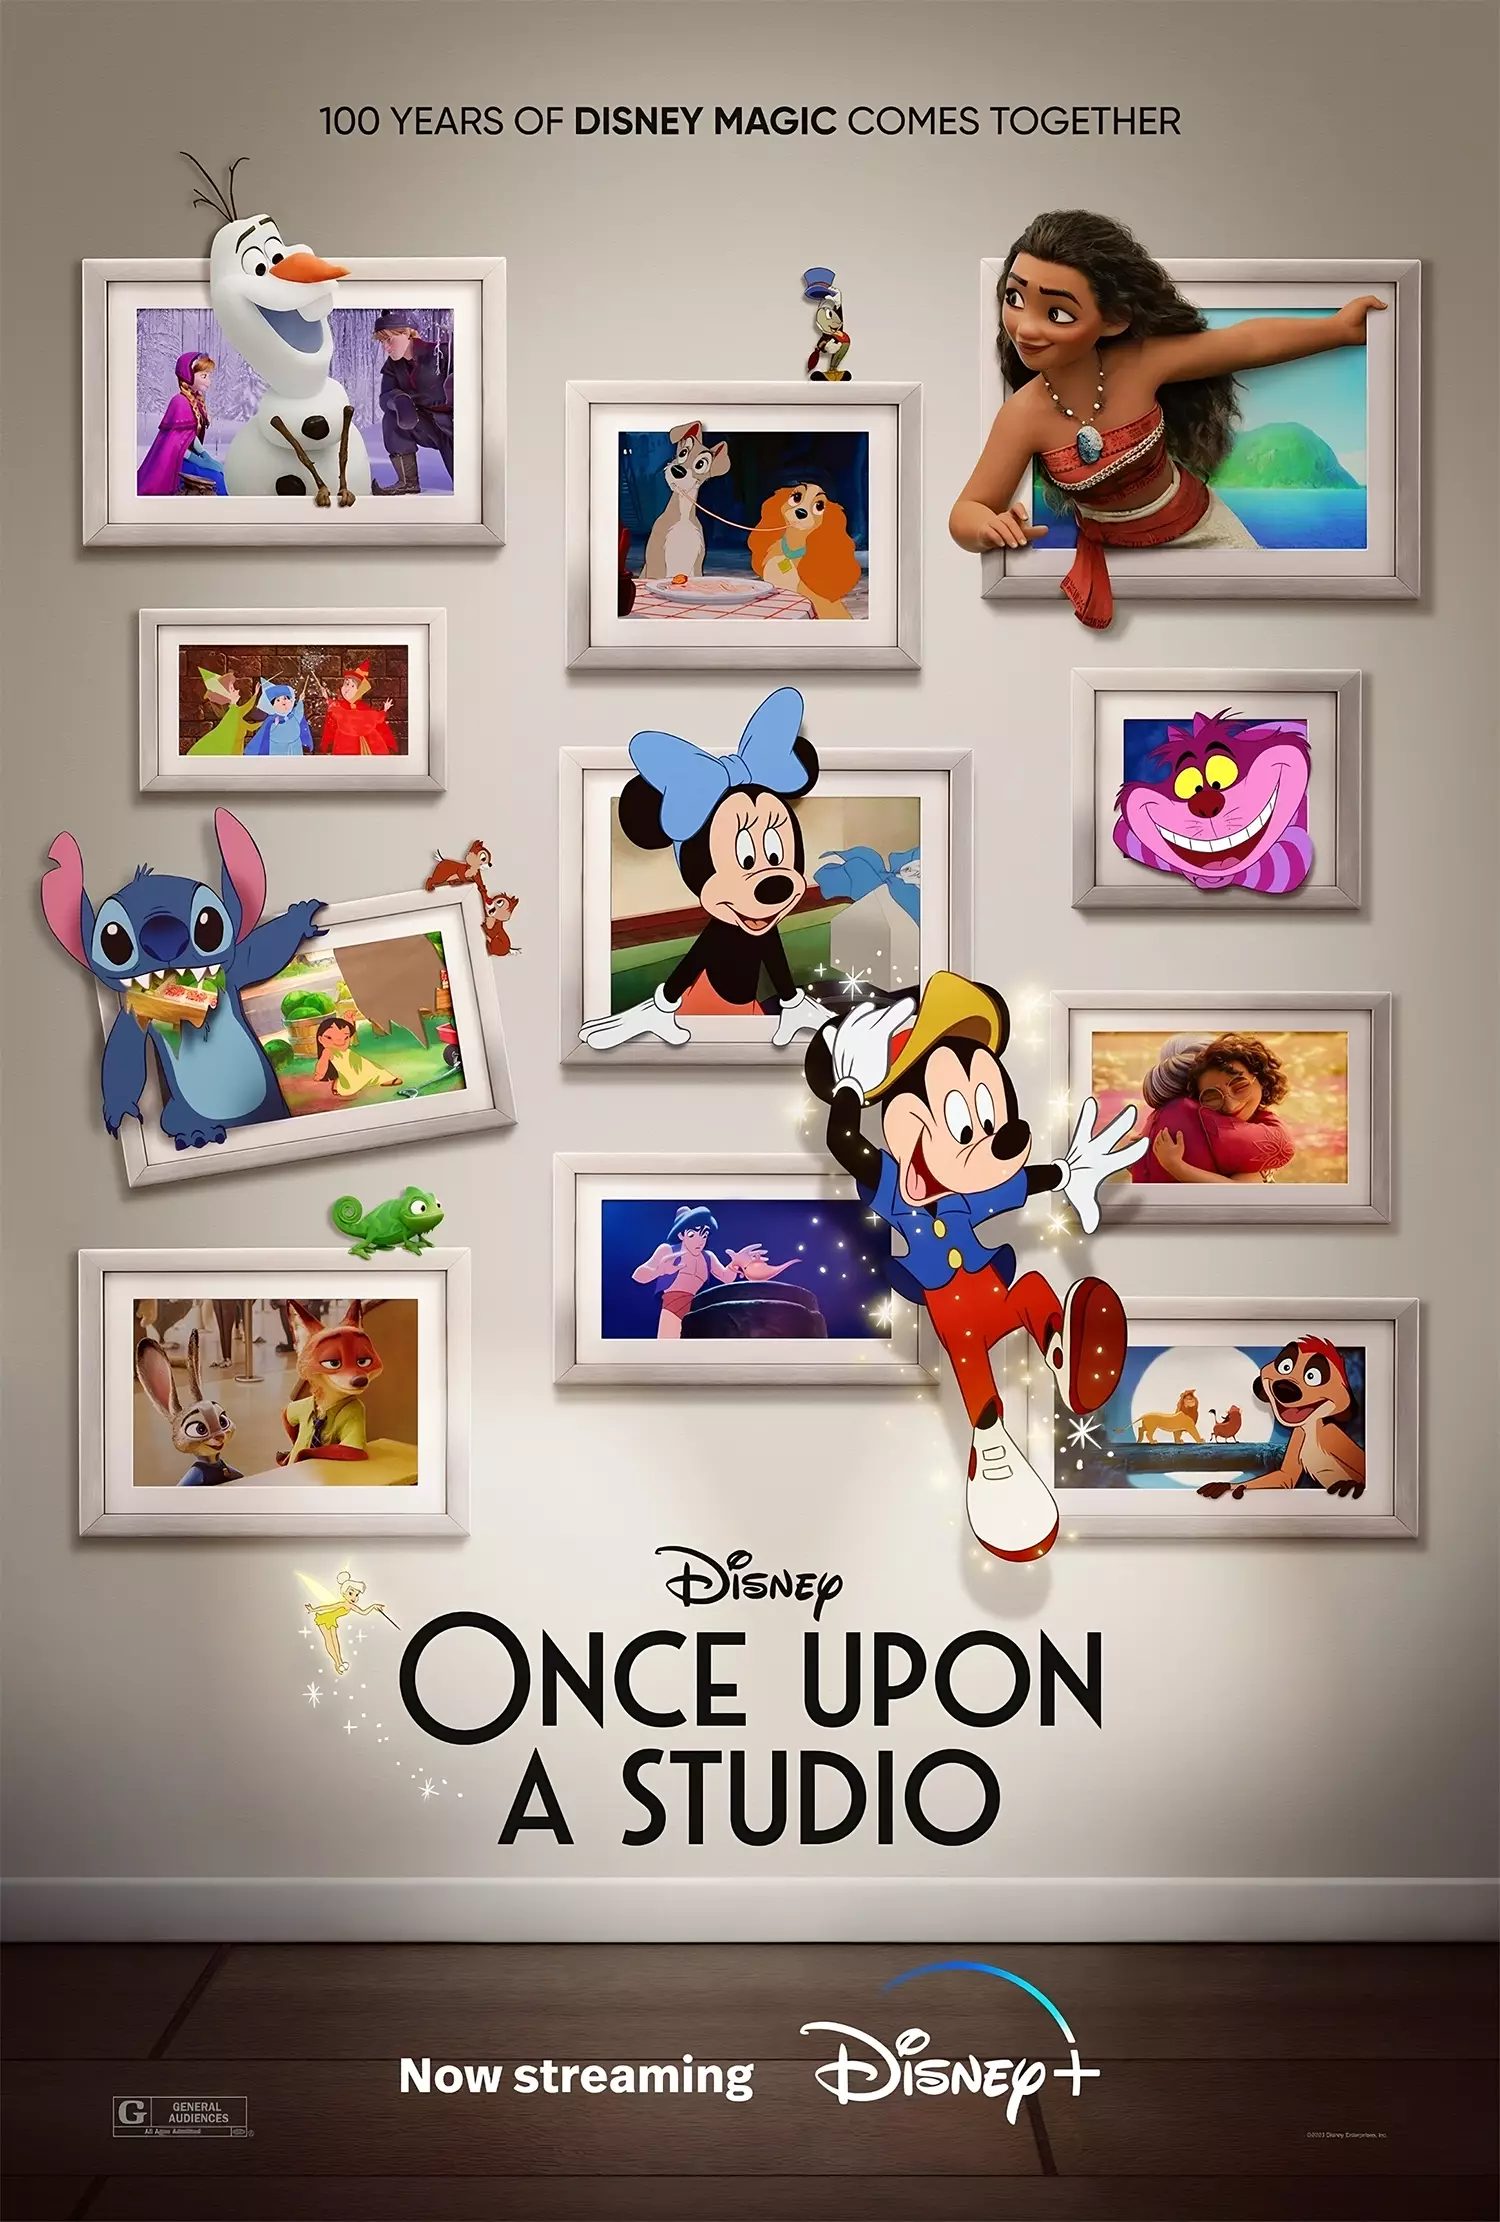 Lancement de Disney100 sur Disney+ avec le premier stream de "Once Upon A Studio" de Walt Disney Animation Studios